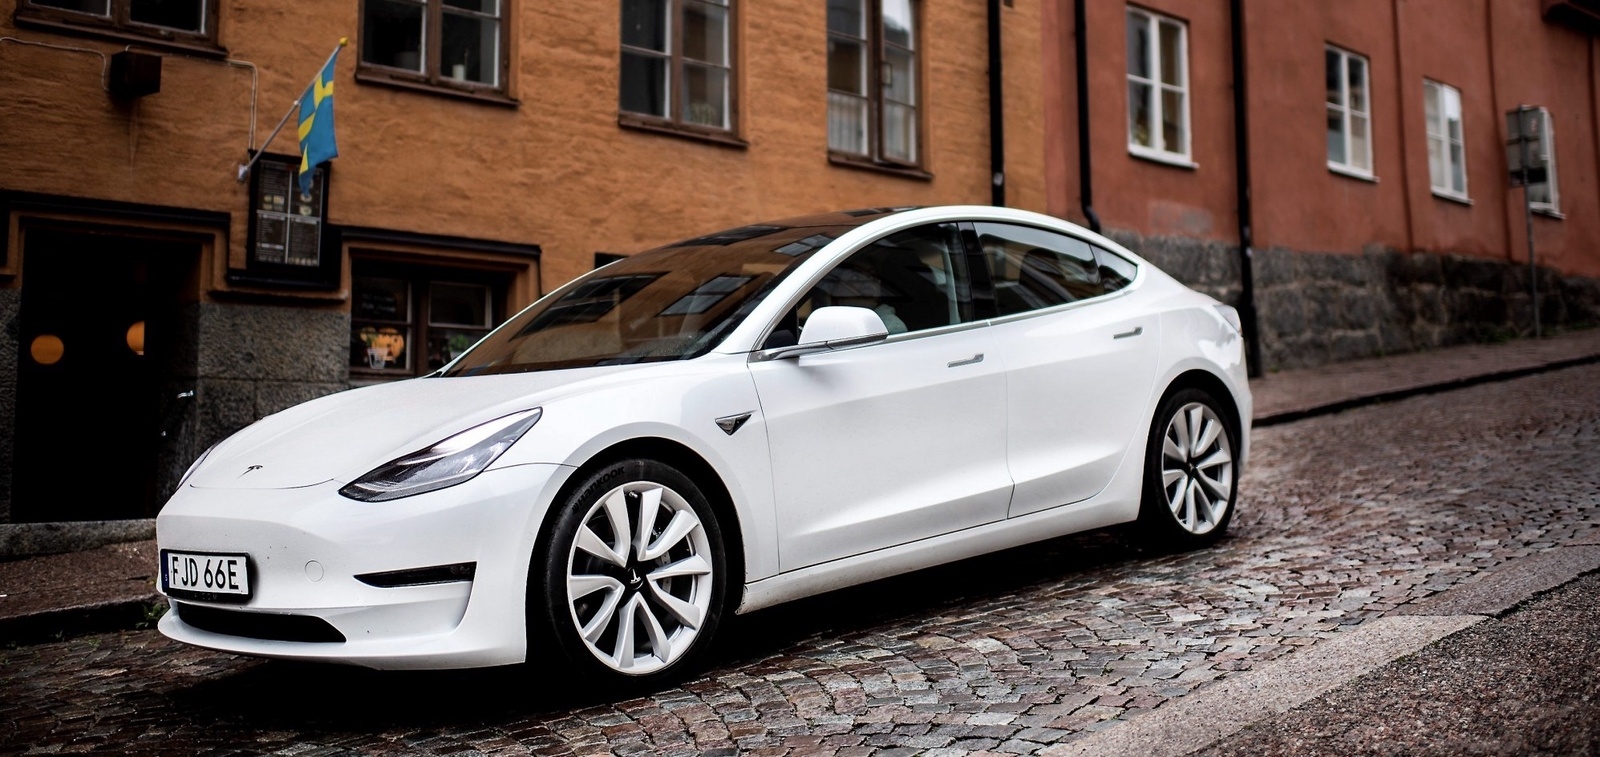 Trots ett egentligen ganska anonymt utseende är det lätt att se Tesla Model 3 i trafiken. Den har en hållning och en ”blick” som sticker ut.
Foto: Pontus Lundahl/TT